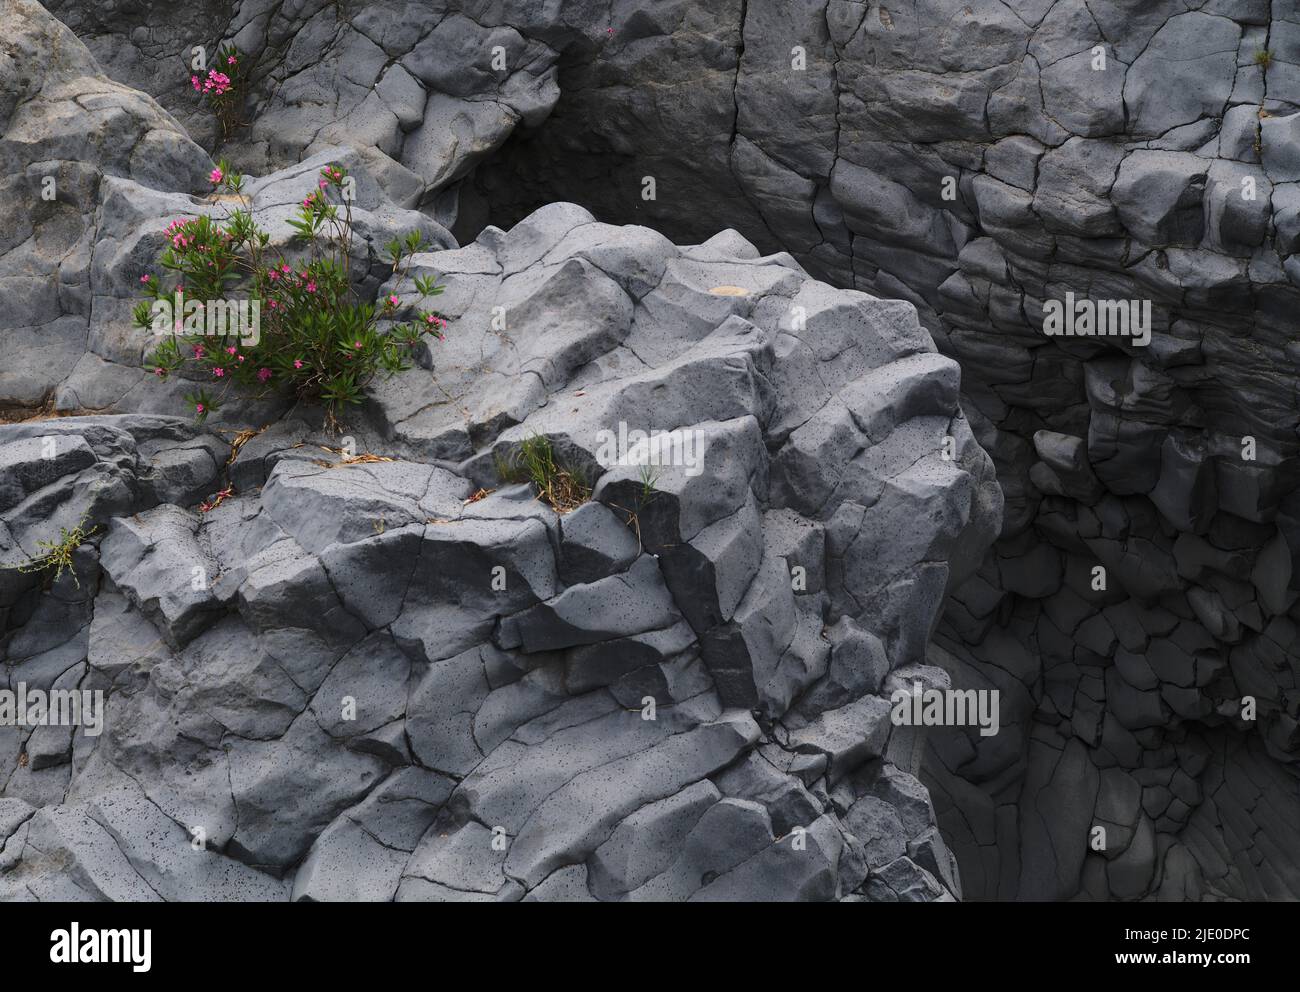 XXLava roccia nel parco fluviale Gole dell'Alcantara, Gola dell'Alcantara, Sicilia, Italia, Europa Foto Stock